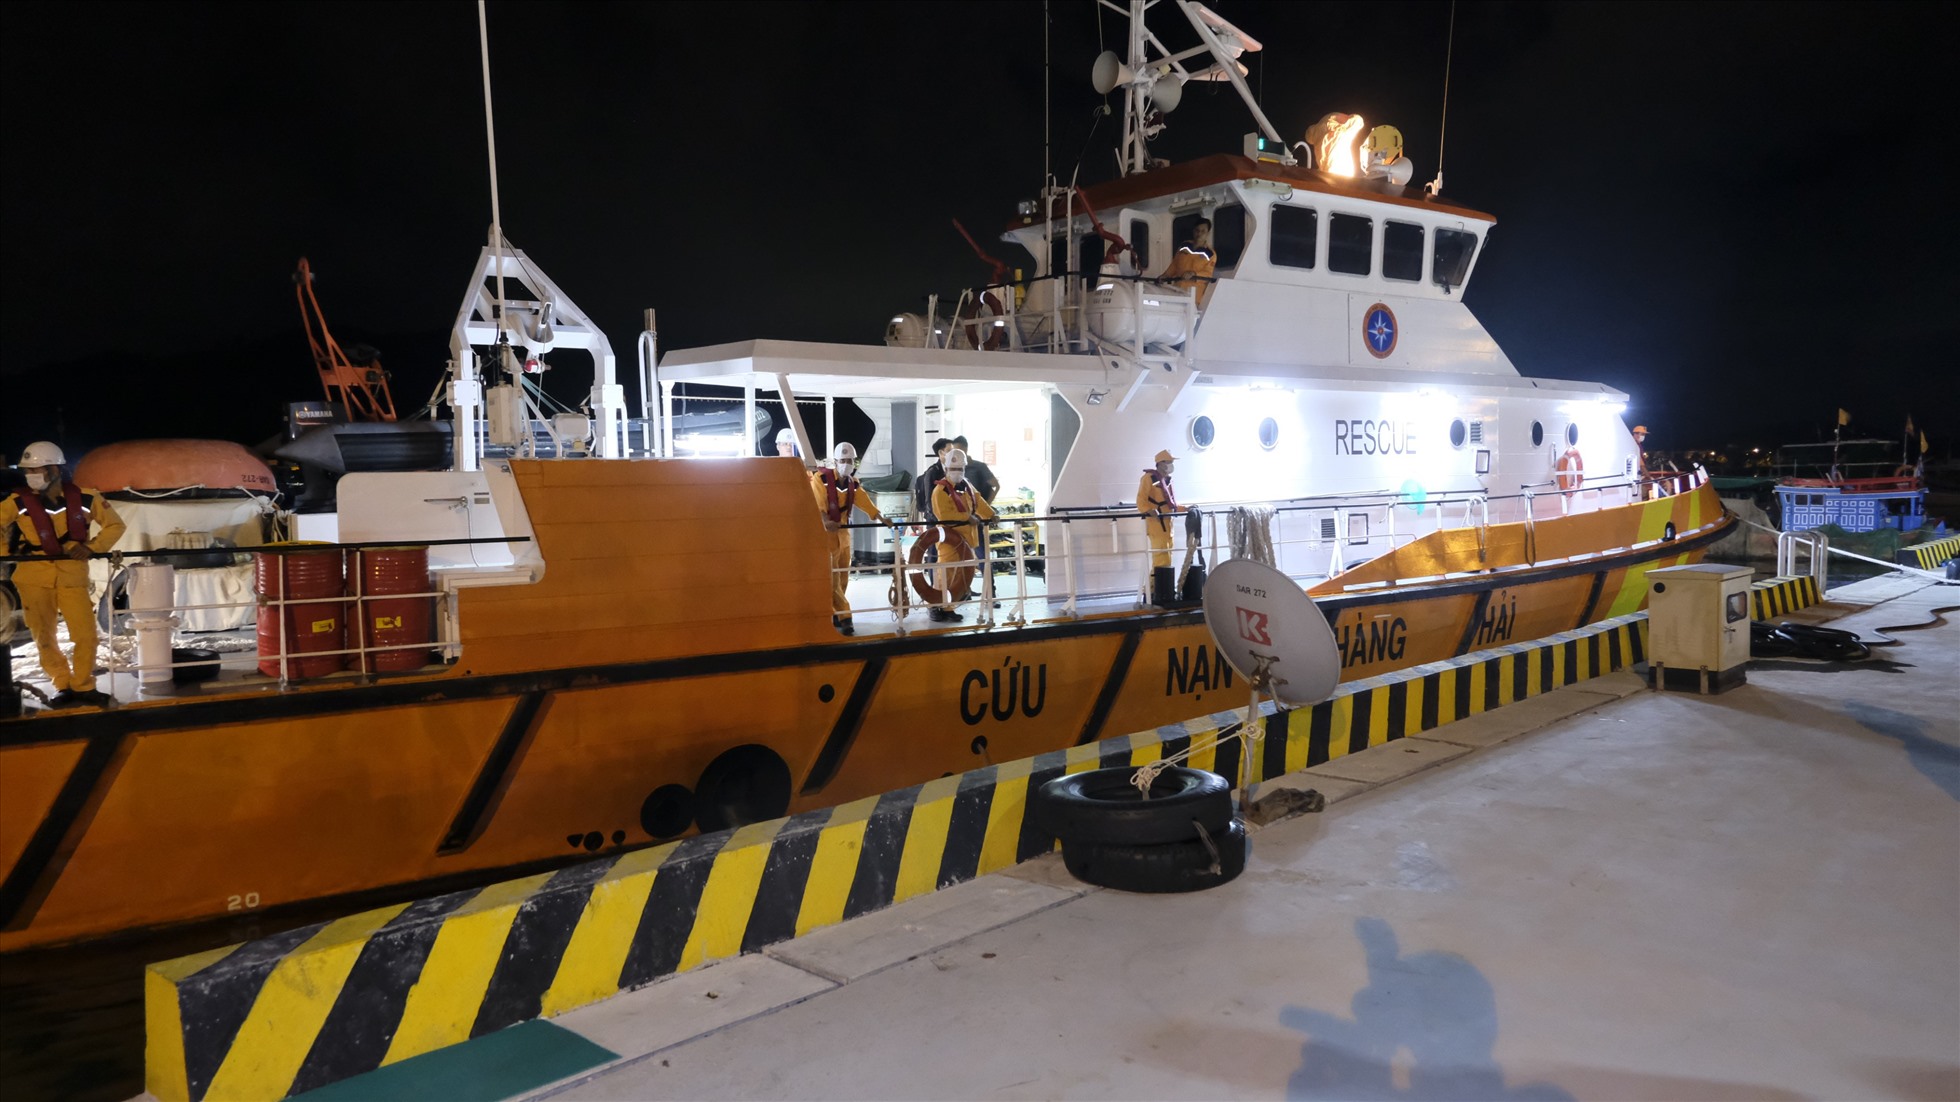 23h tối 17.11, lực lượng cứu nạn hàng hải đã đưa thuyền viên bị tai nạn lao động về bờ chuyển đi cấp cứu, điều trị tại bệnh viện.